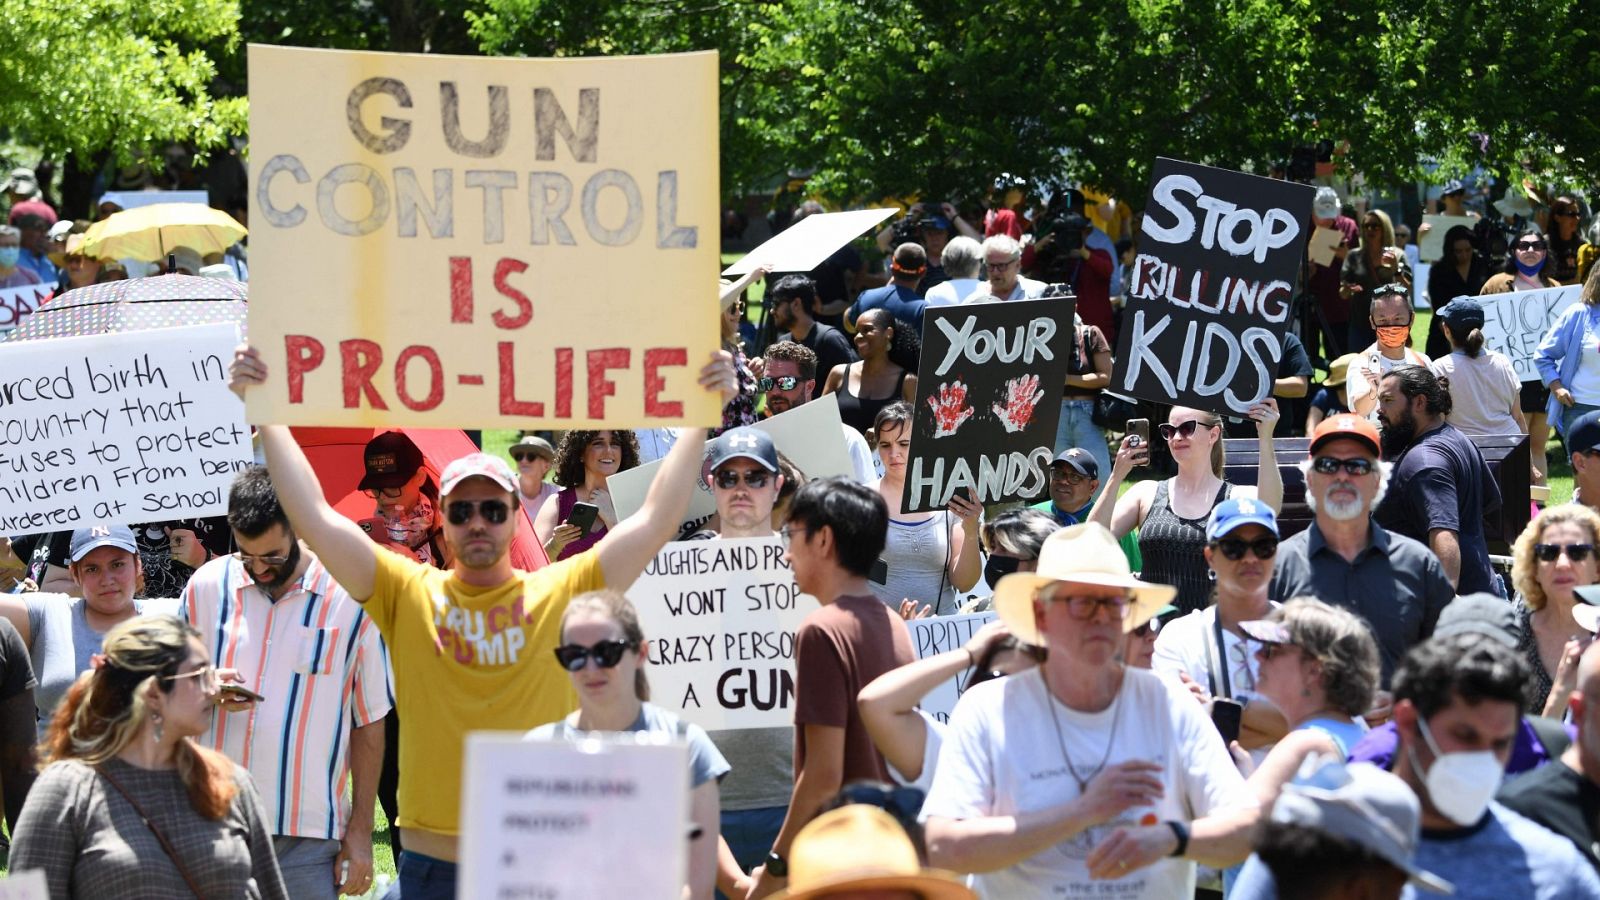 Estados Unidos: La Asociación del Rifle celebra su convención en medio de protestas